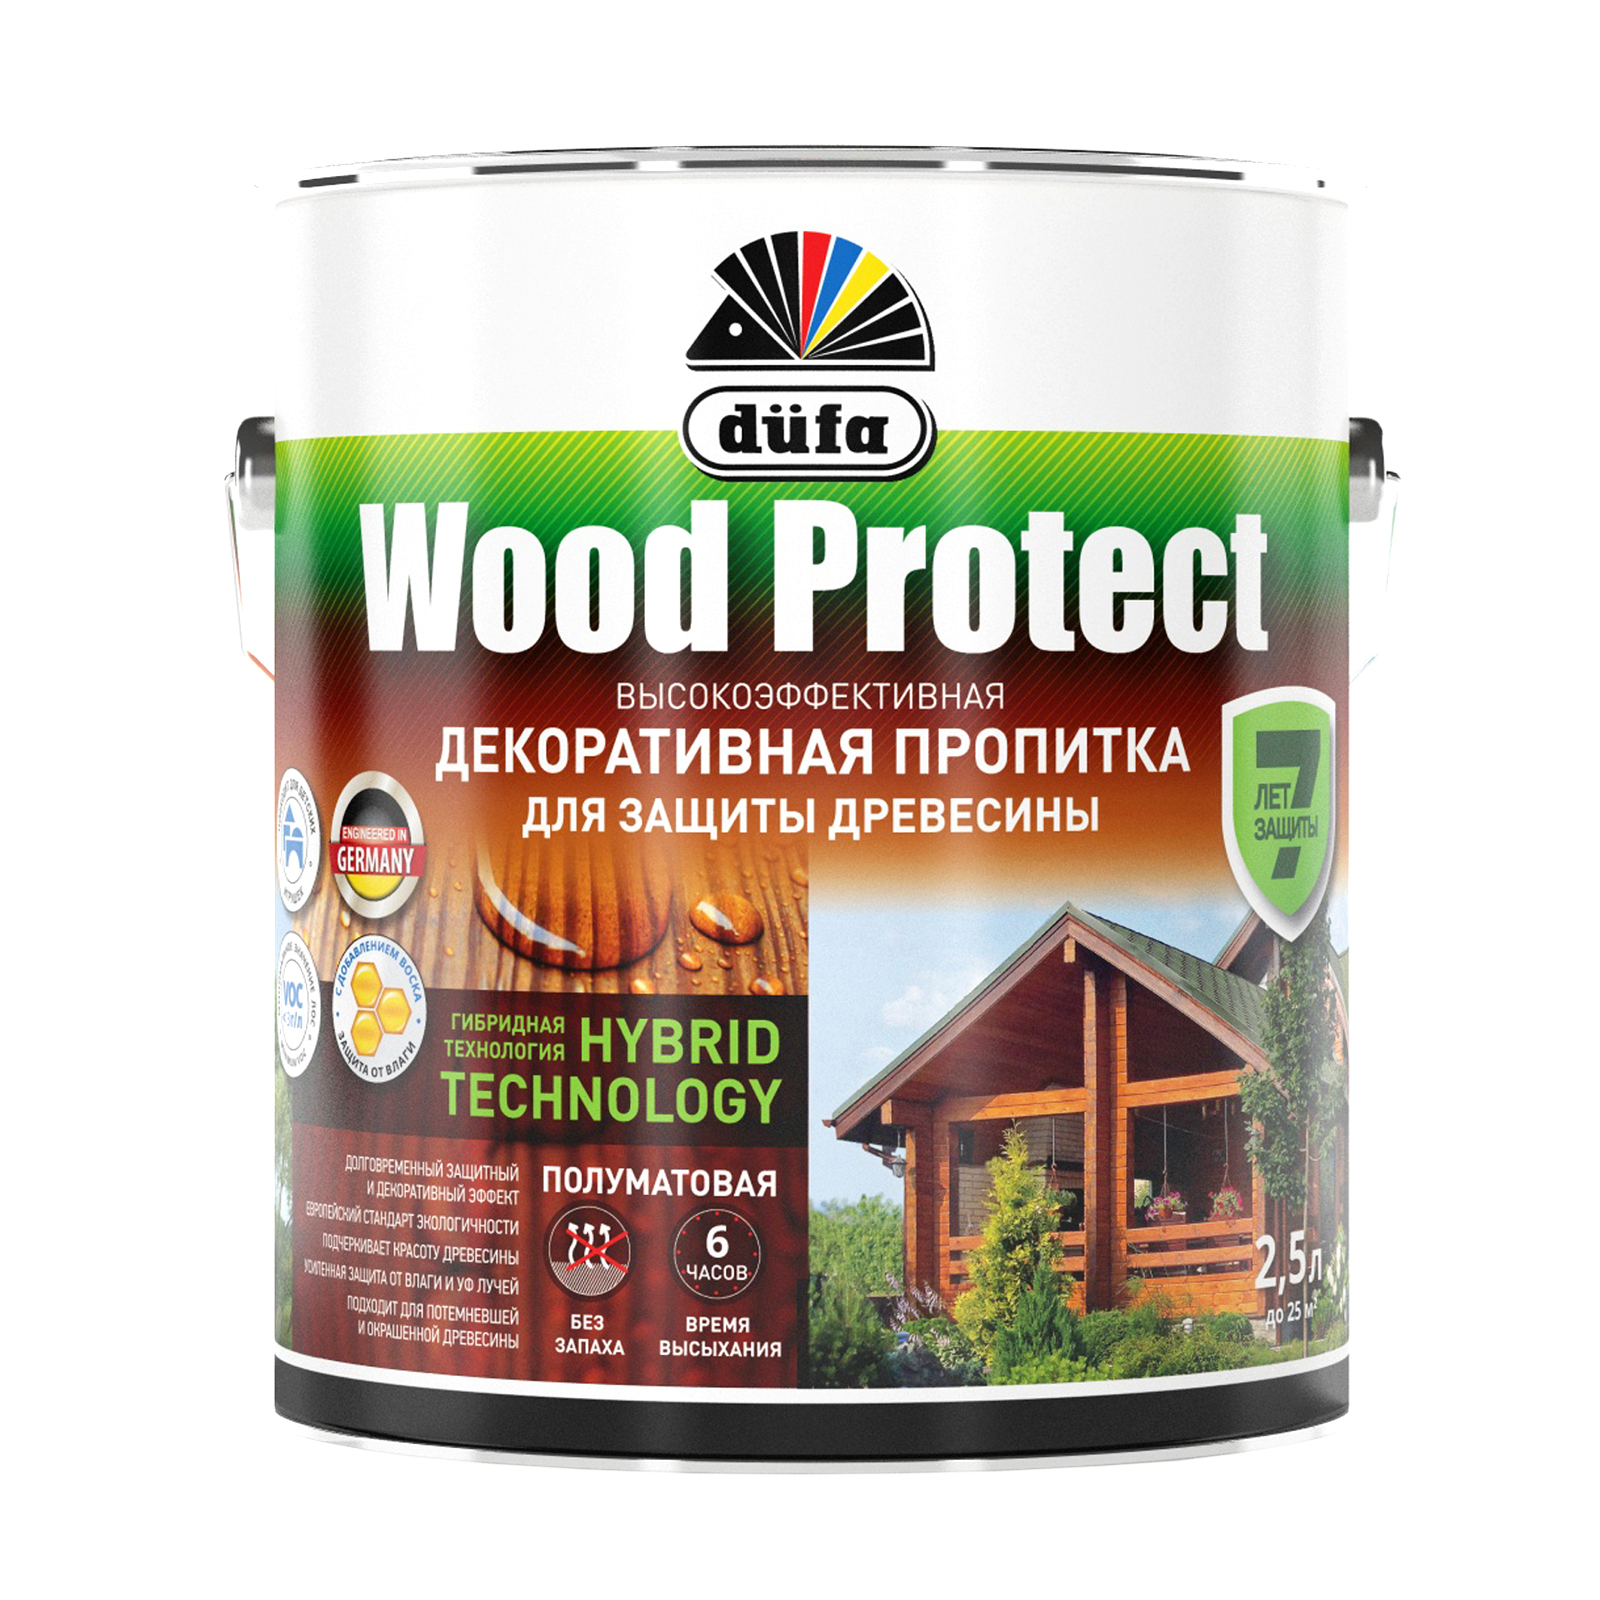 Пропитка для древесины Dufa Wood Protect палисандр, 2,5 л пропитка для дерева dufa wood protect полуматовая палисандр 9 л